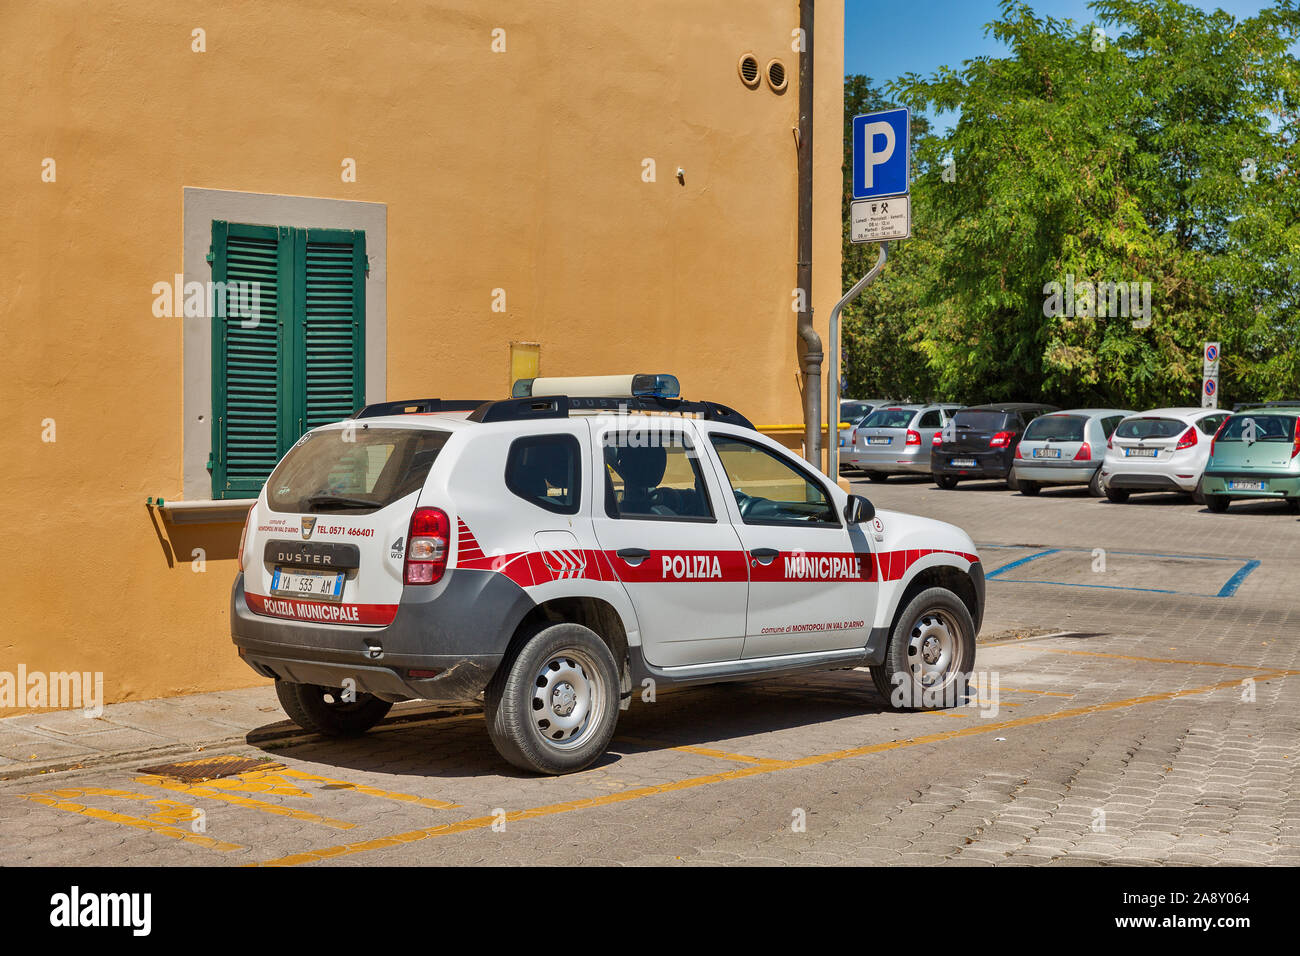 MONTOPOLI IN VAL D'ARNO, ITALIE - 24 juillet 2019 : la Police Municipale Renault Duster voiture garée dans la rue. C'est une municipalité dans la province de Pise Banque D'Images